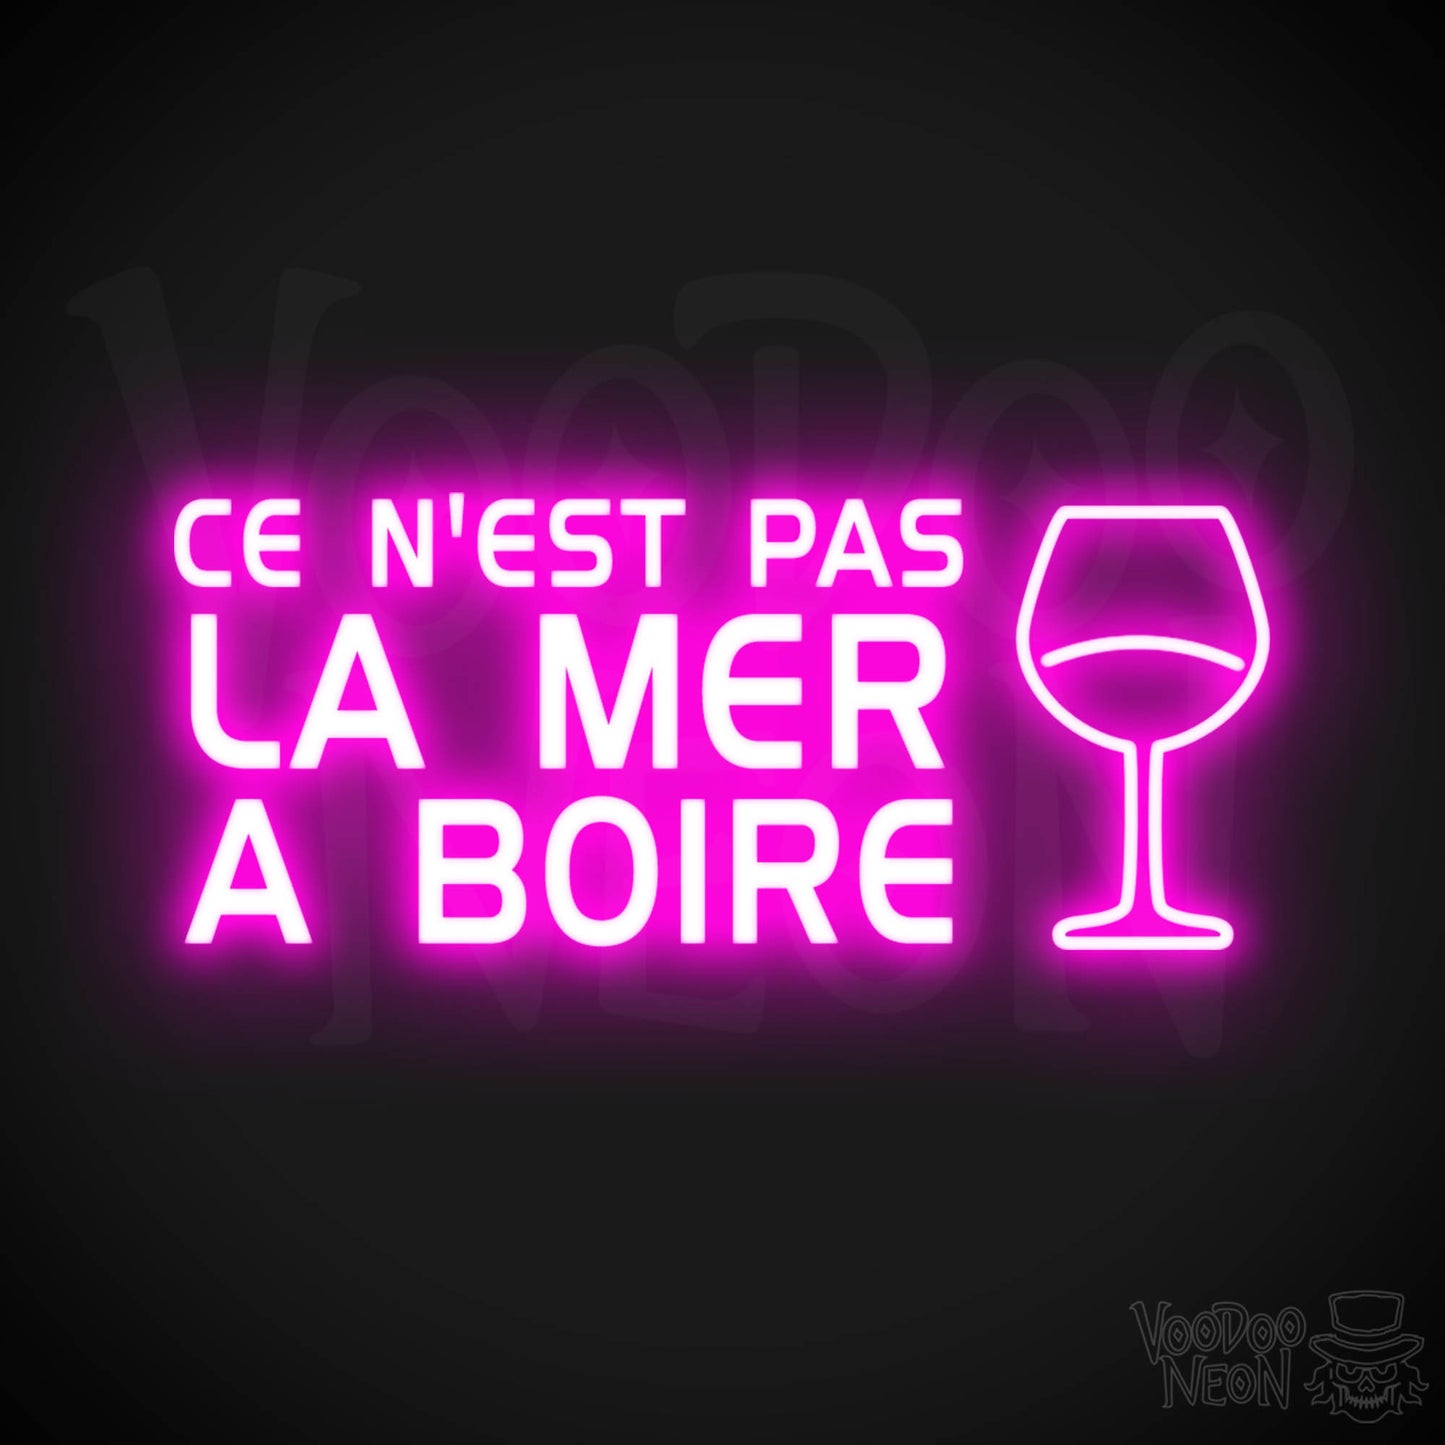 Ce N'est Pas La Mer a Boire Neon Sign - LED Lights - Color Pink